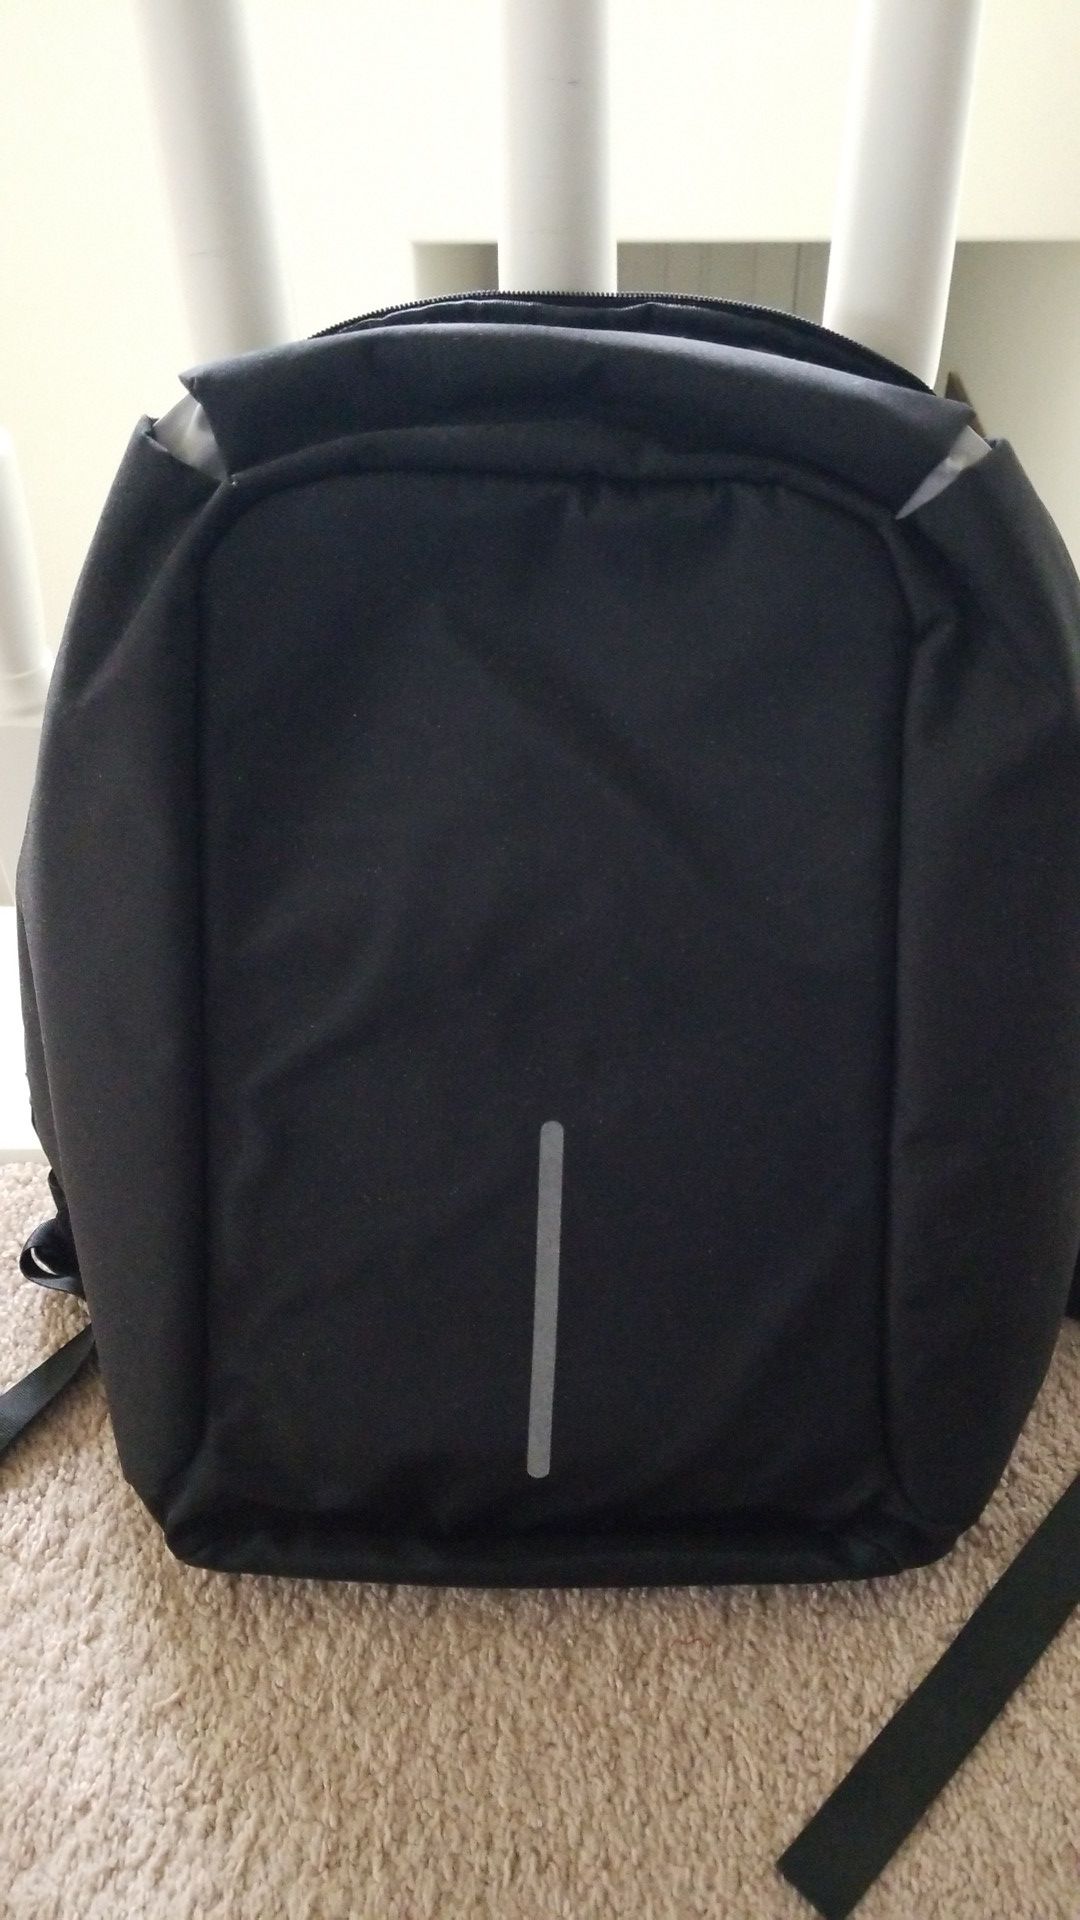 RFID laptop backpack